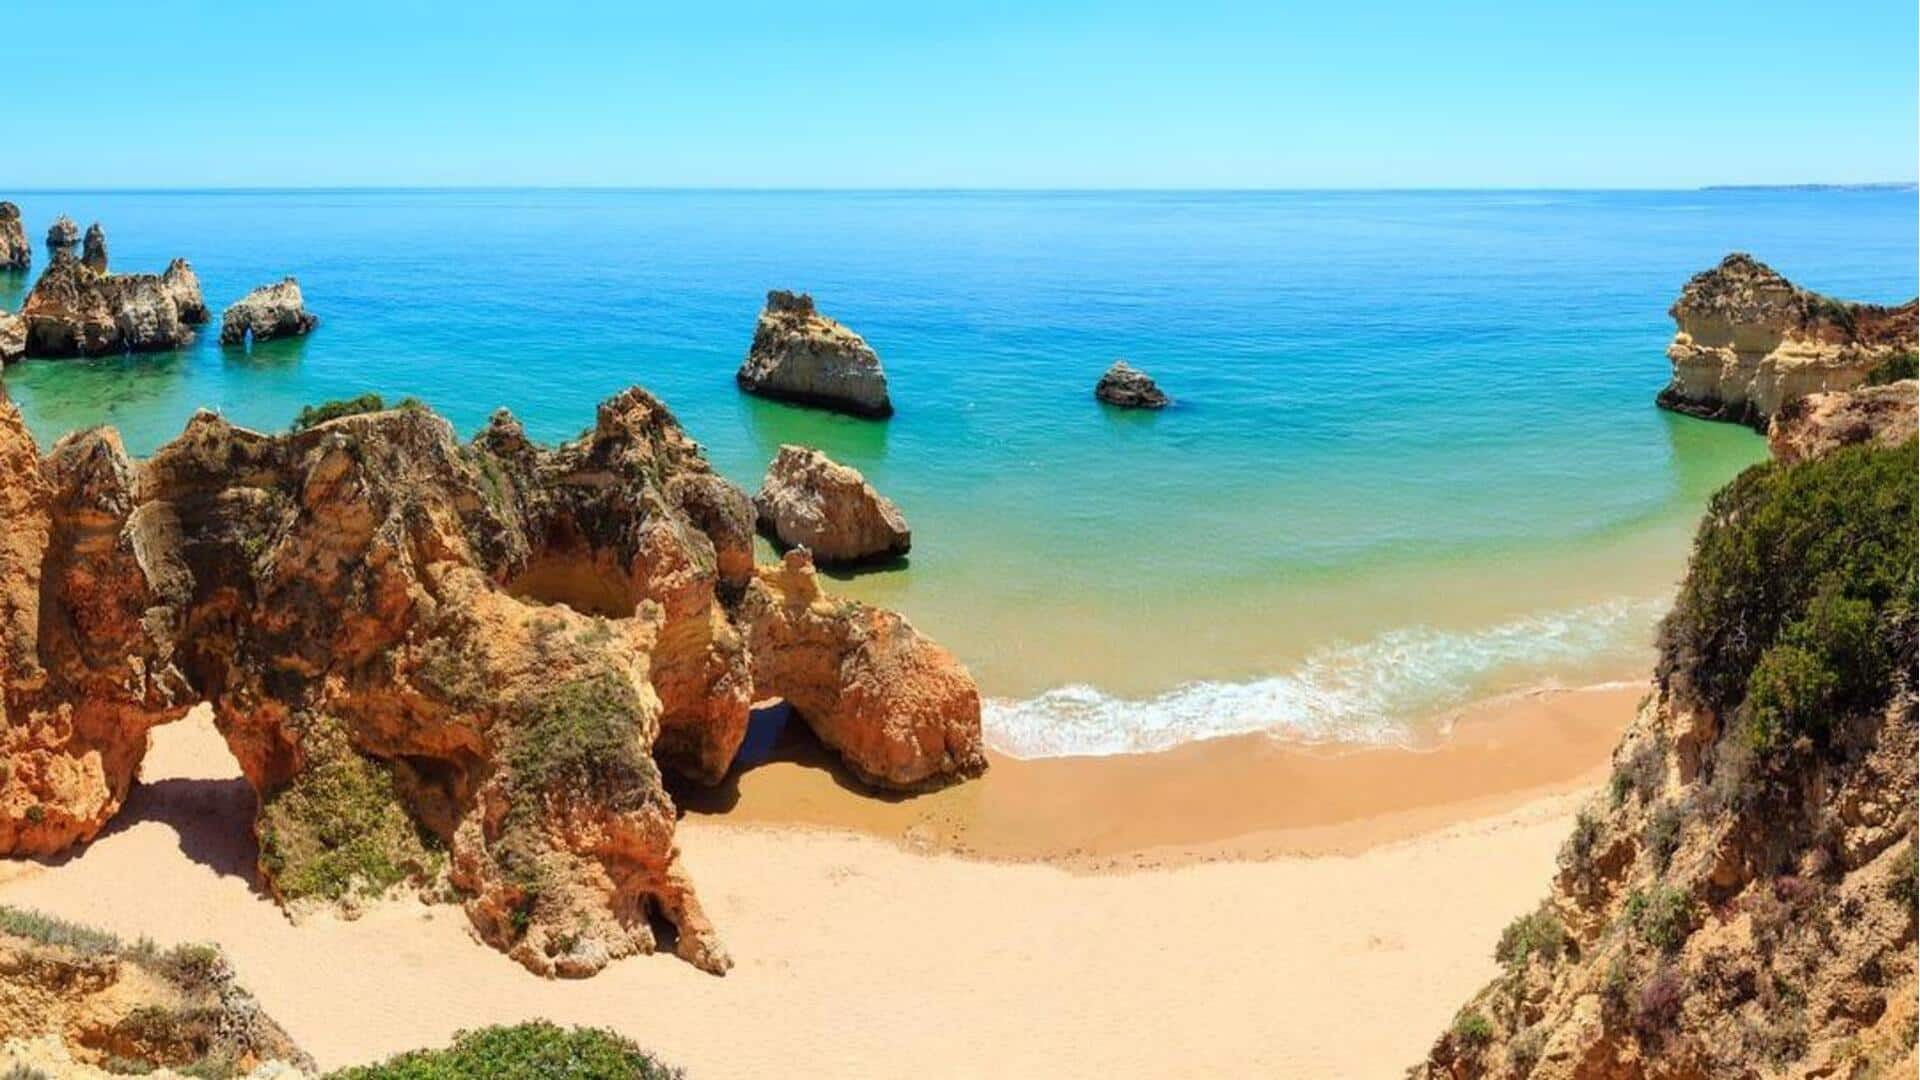 Jelajahi pantai-pantai tenang Algarve dengan panduan perjalanan ini